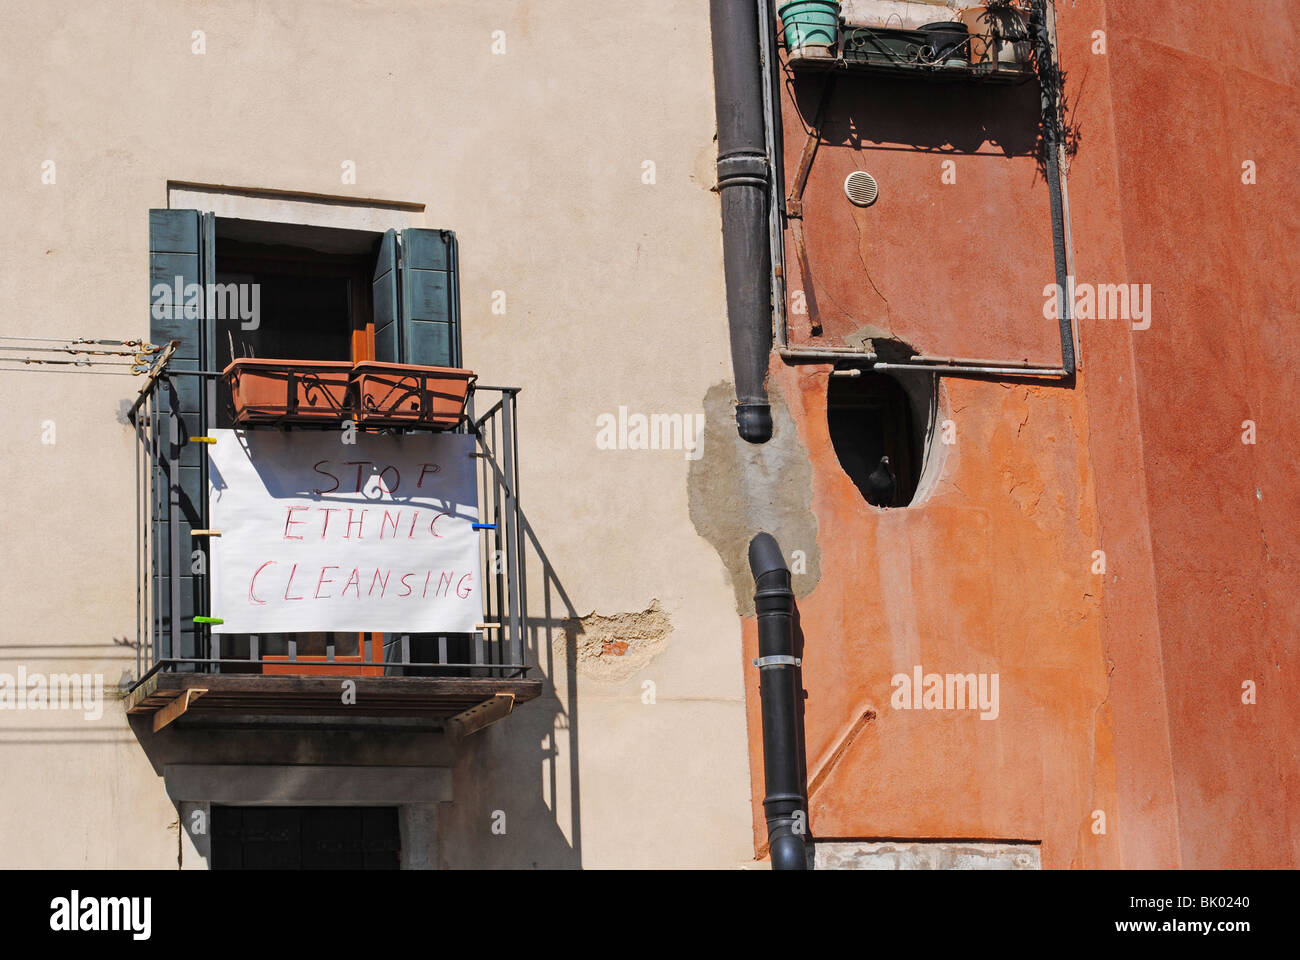 Fermare la pulizia etnica segno nel ghetto ebraico di Venezia, Italia Foto Stock